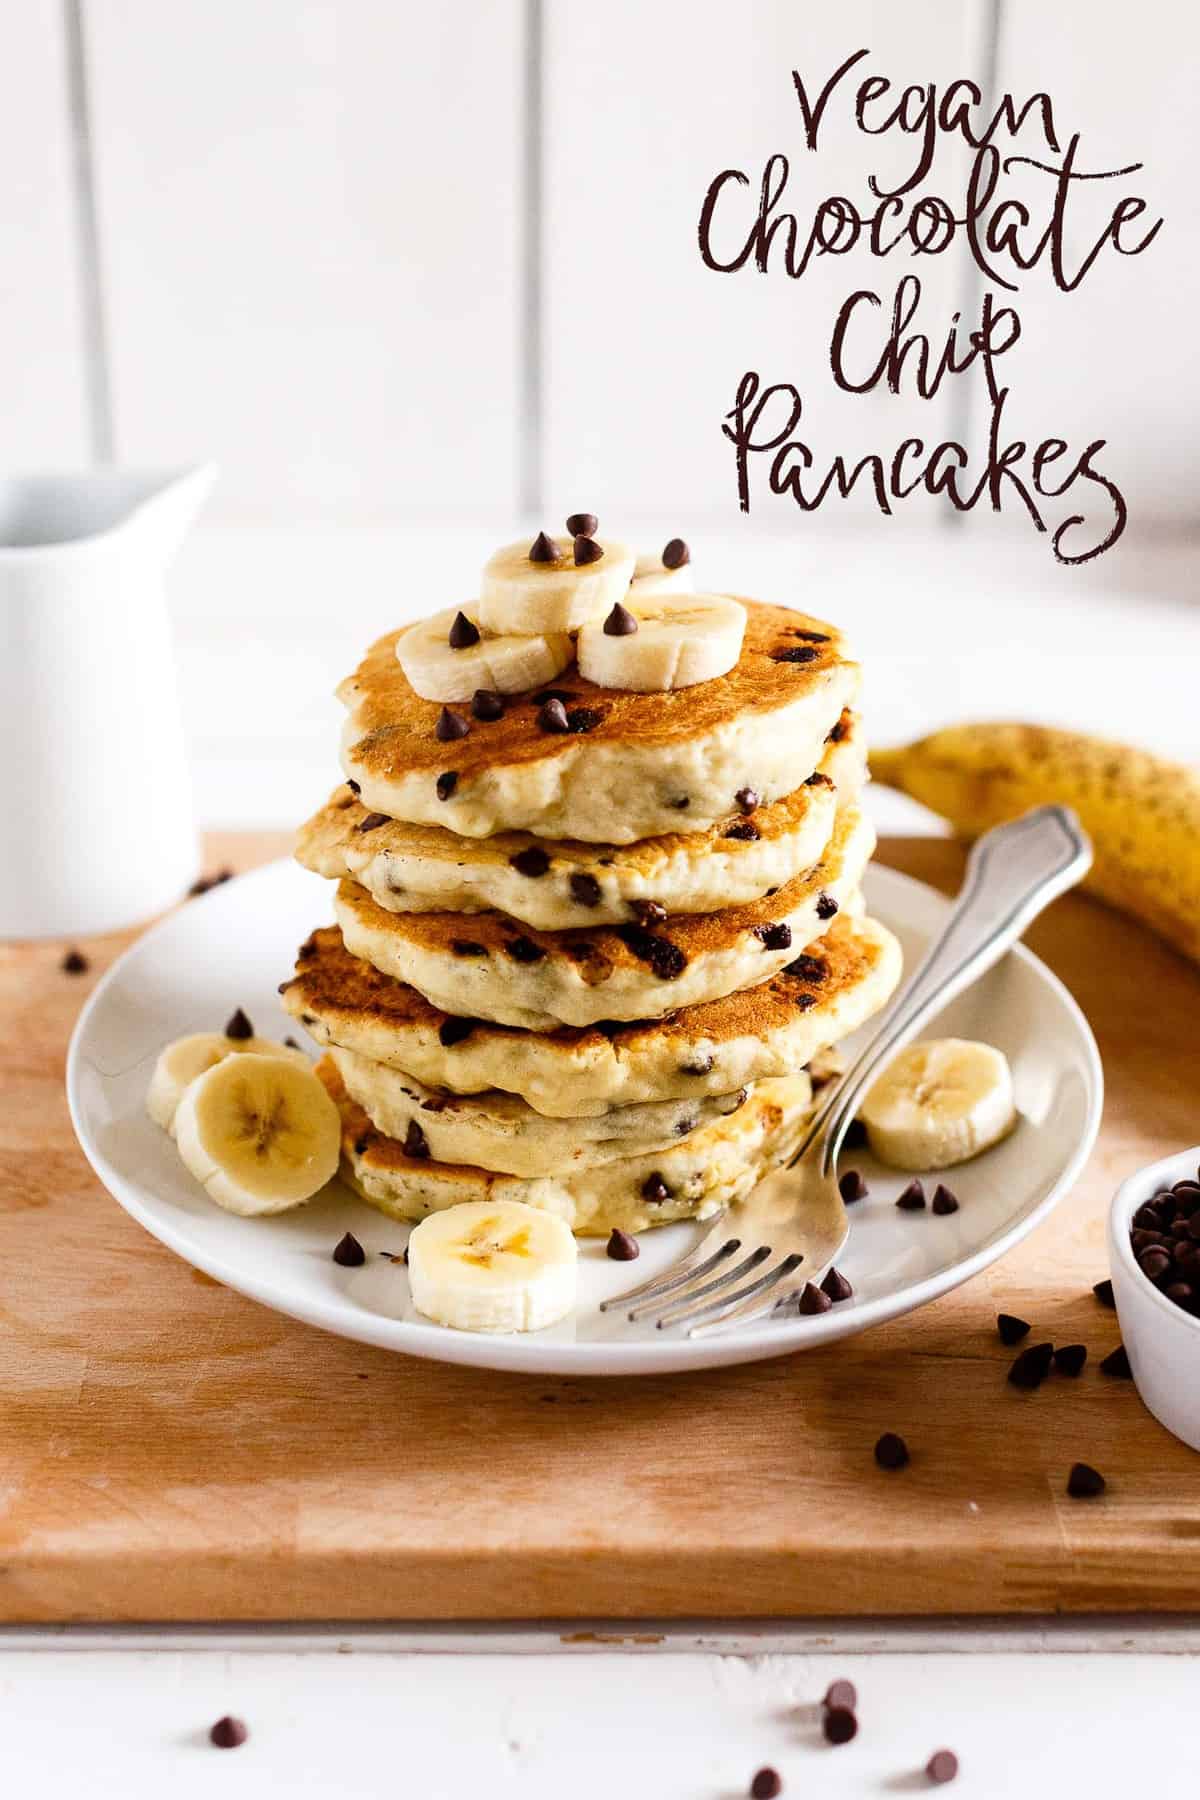 Stapel veganistische chocolate chip pancakes gegarneerd met plakjes banaan en maple syrup.